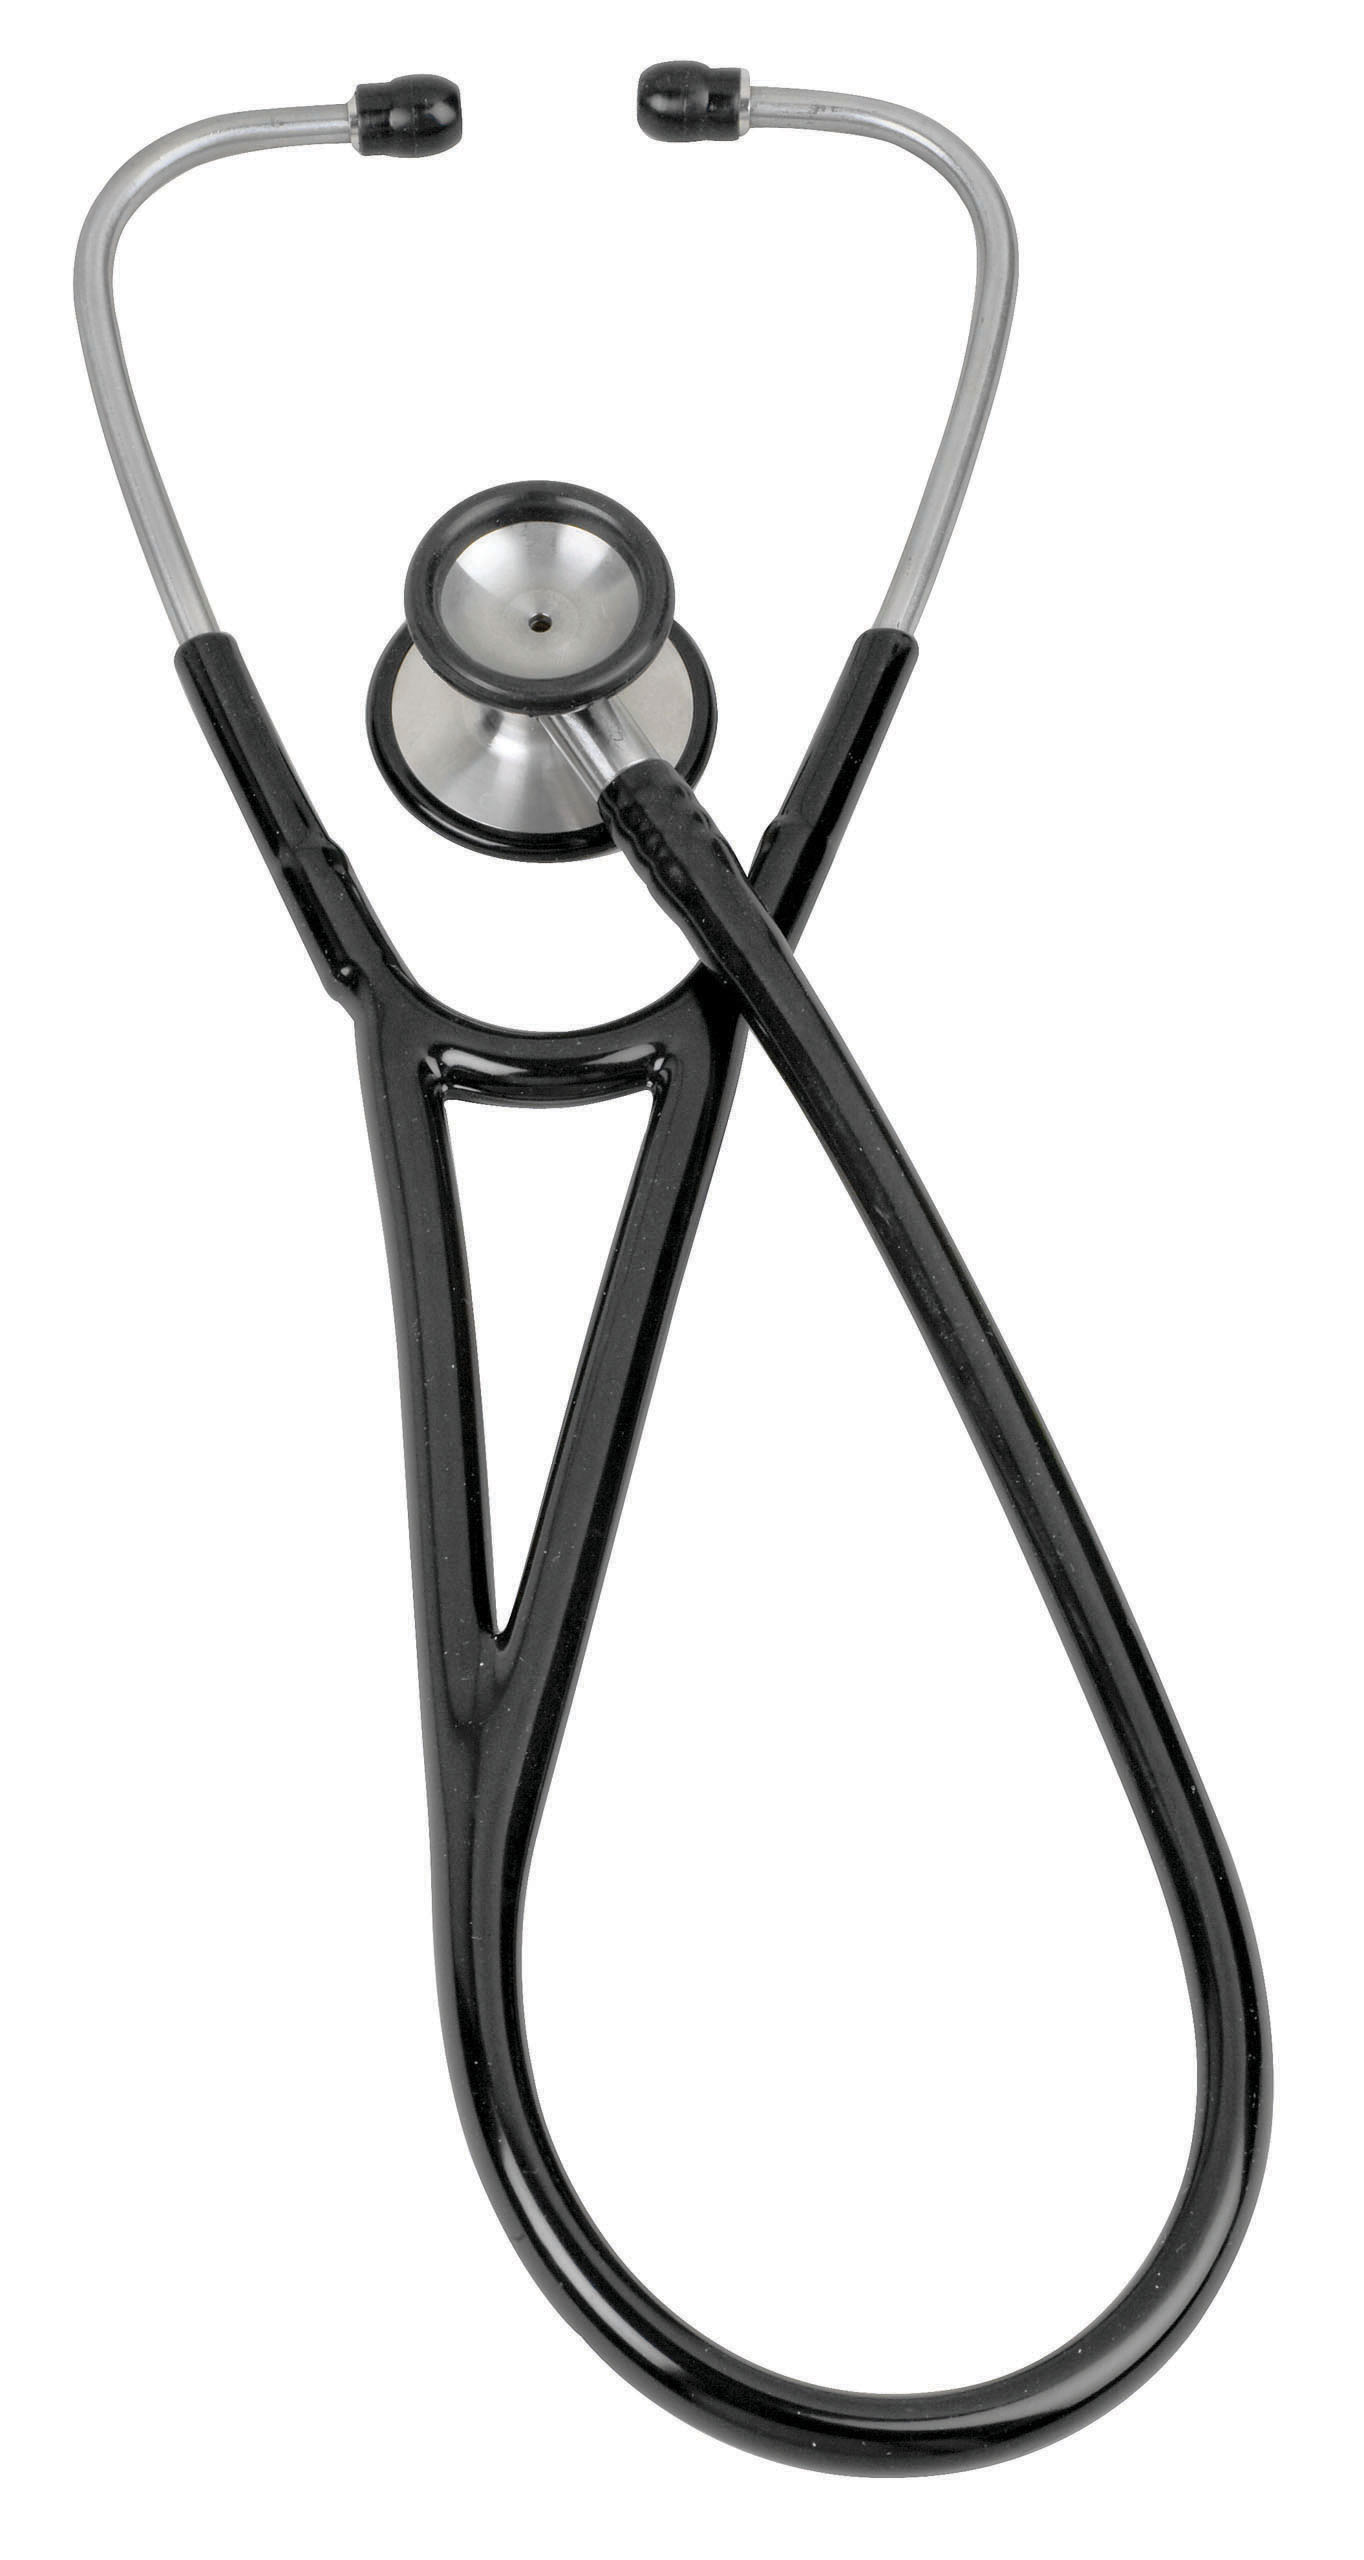 pinnacle-series-stainless-steel-cardiology-stethoscope-black-05-10401-veridian-2.jpg